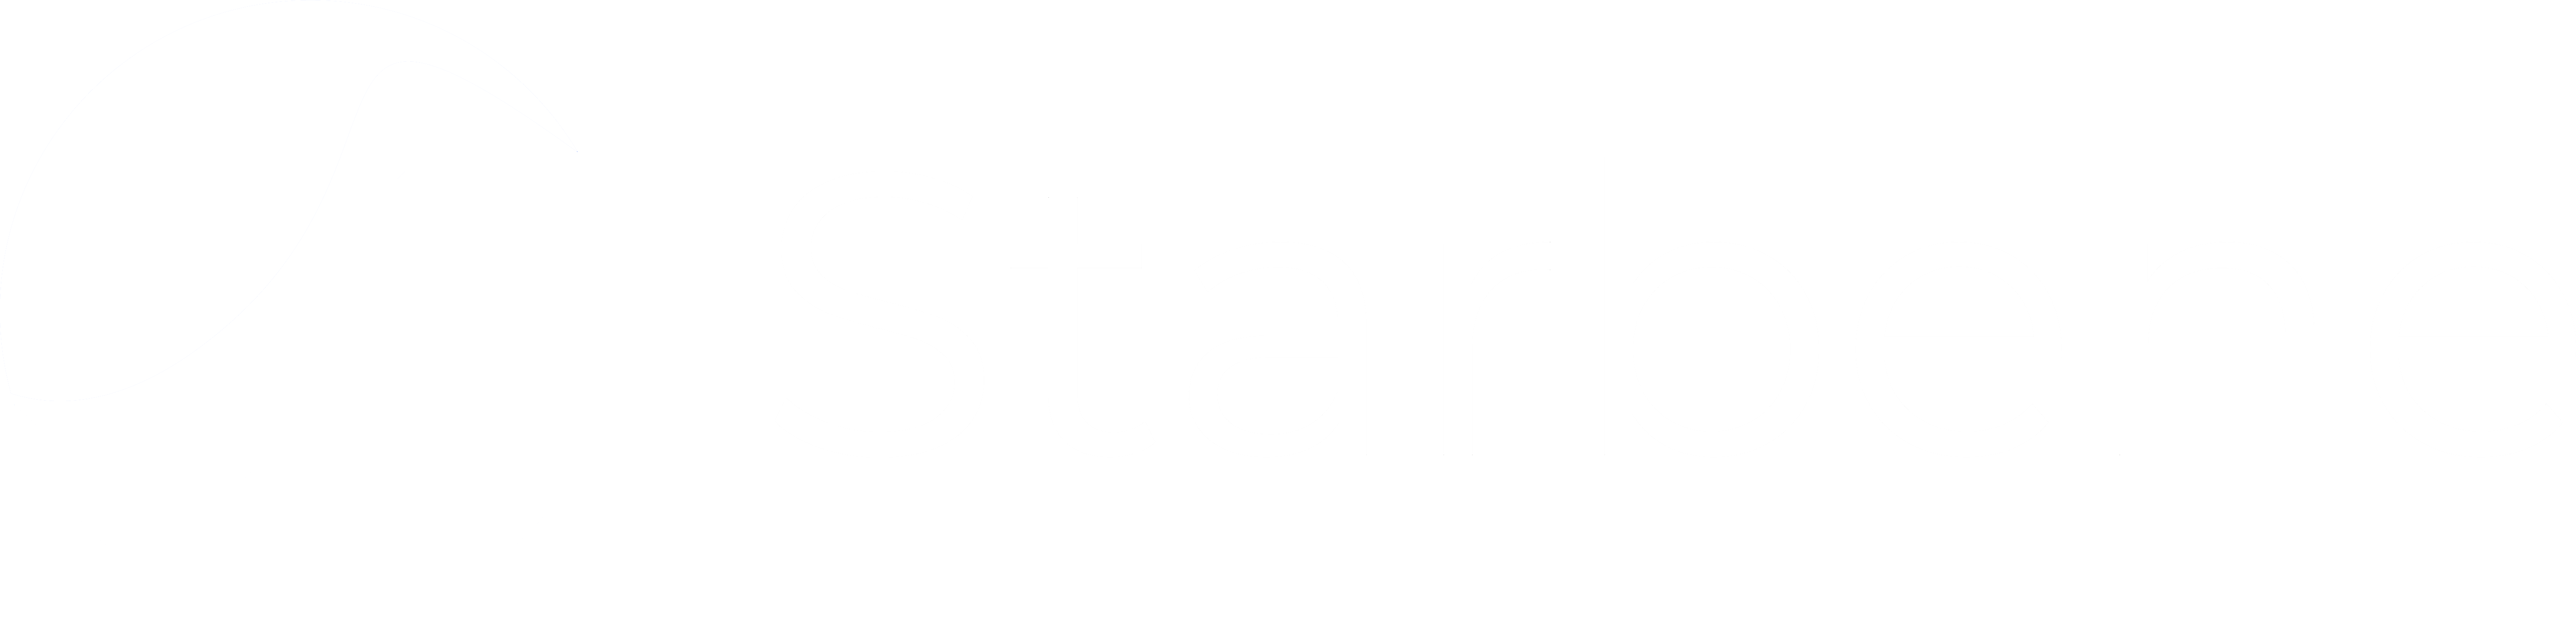 Logo Starbene